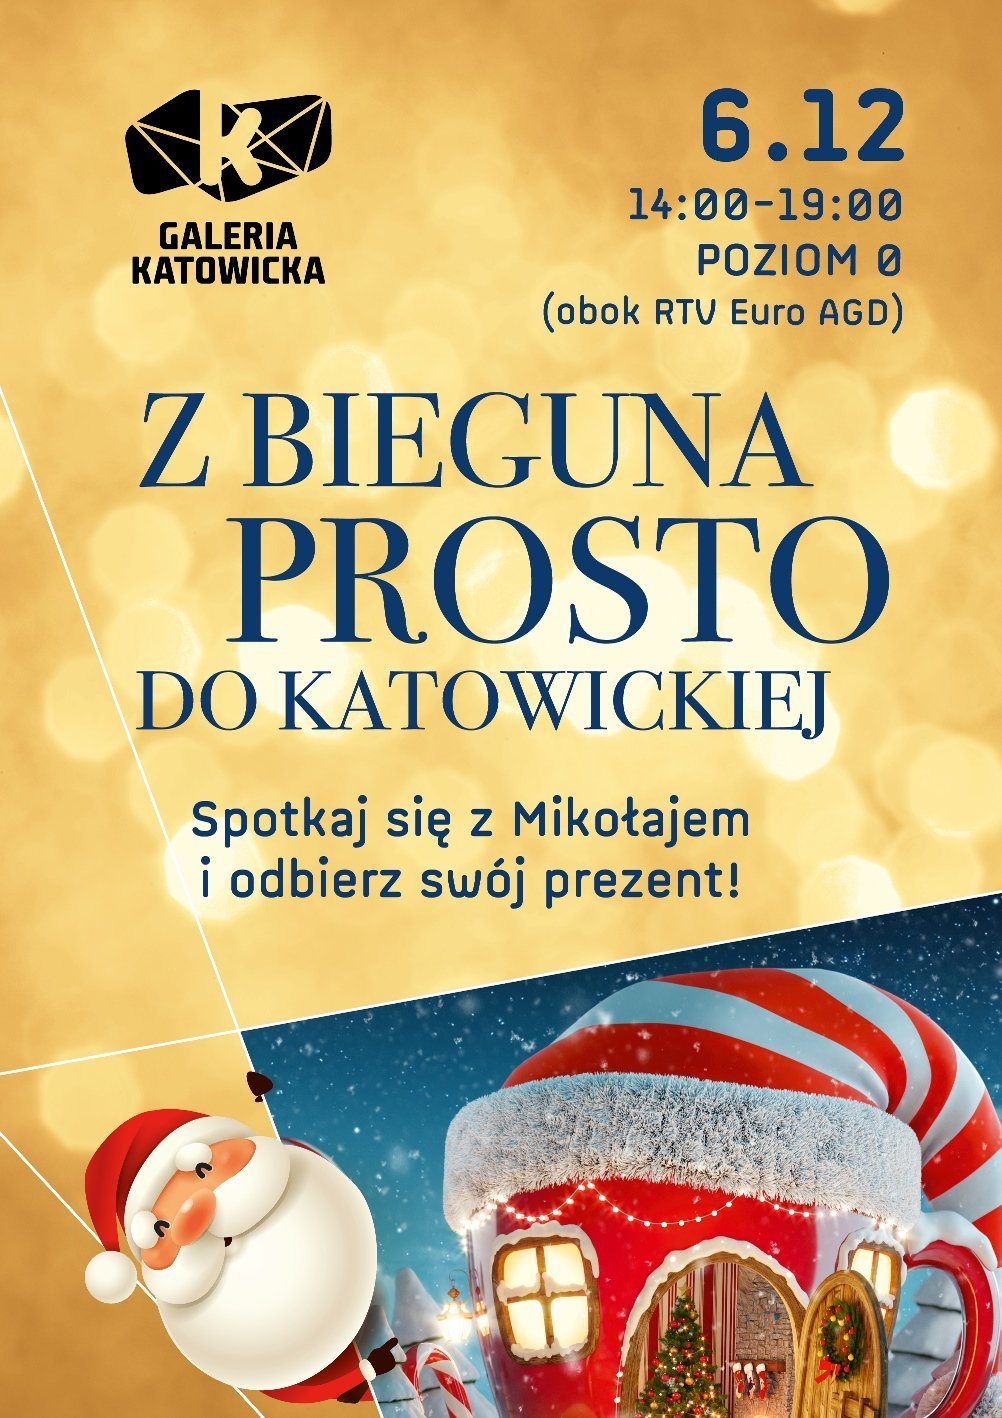 Spotkanie ze Świętym Mikołajem. Katowice